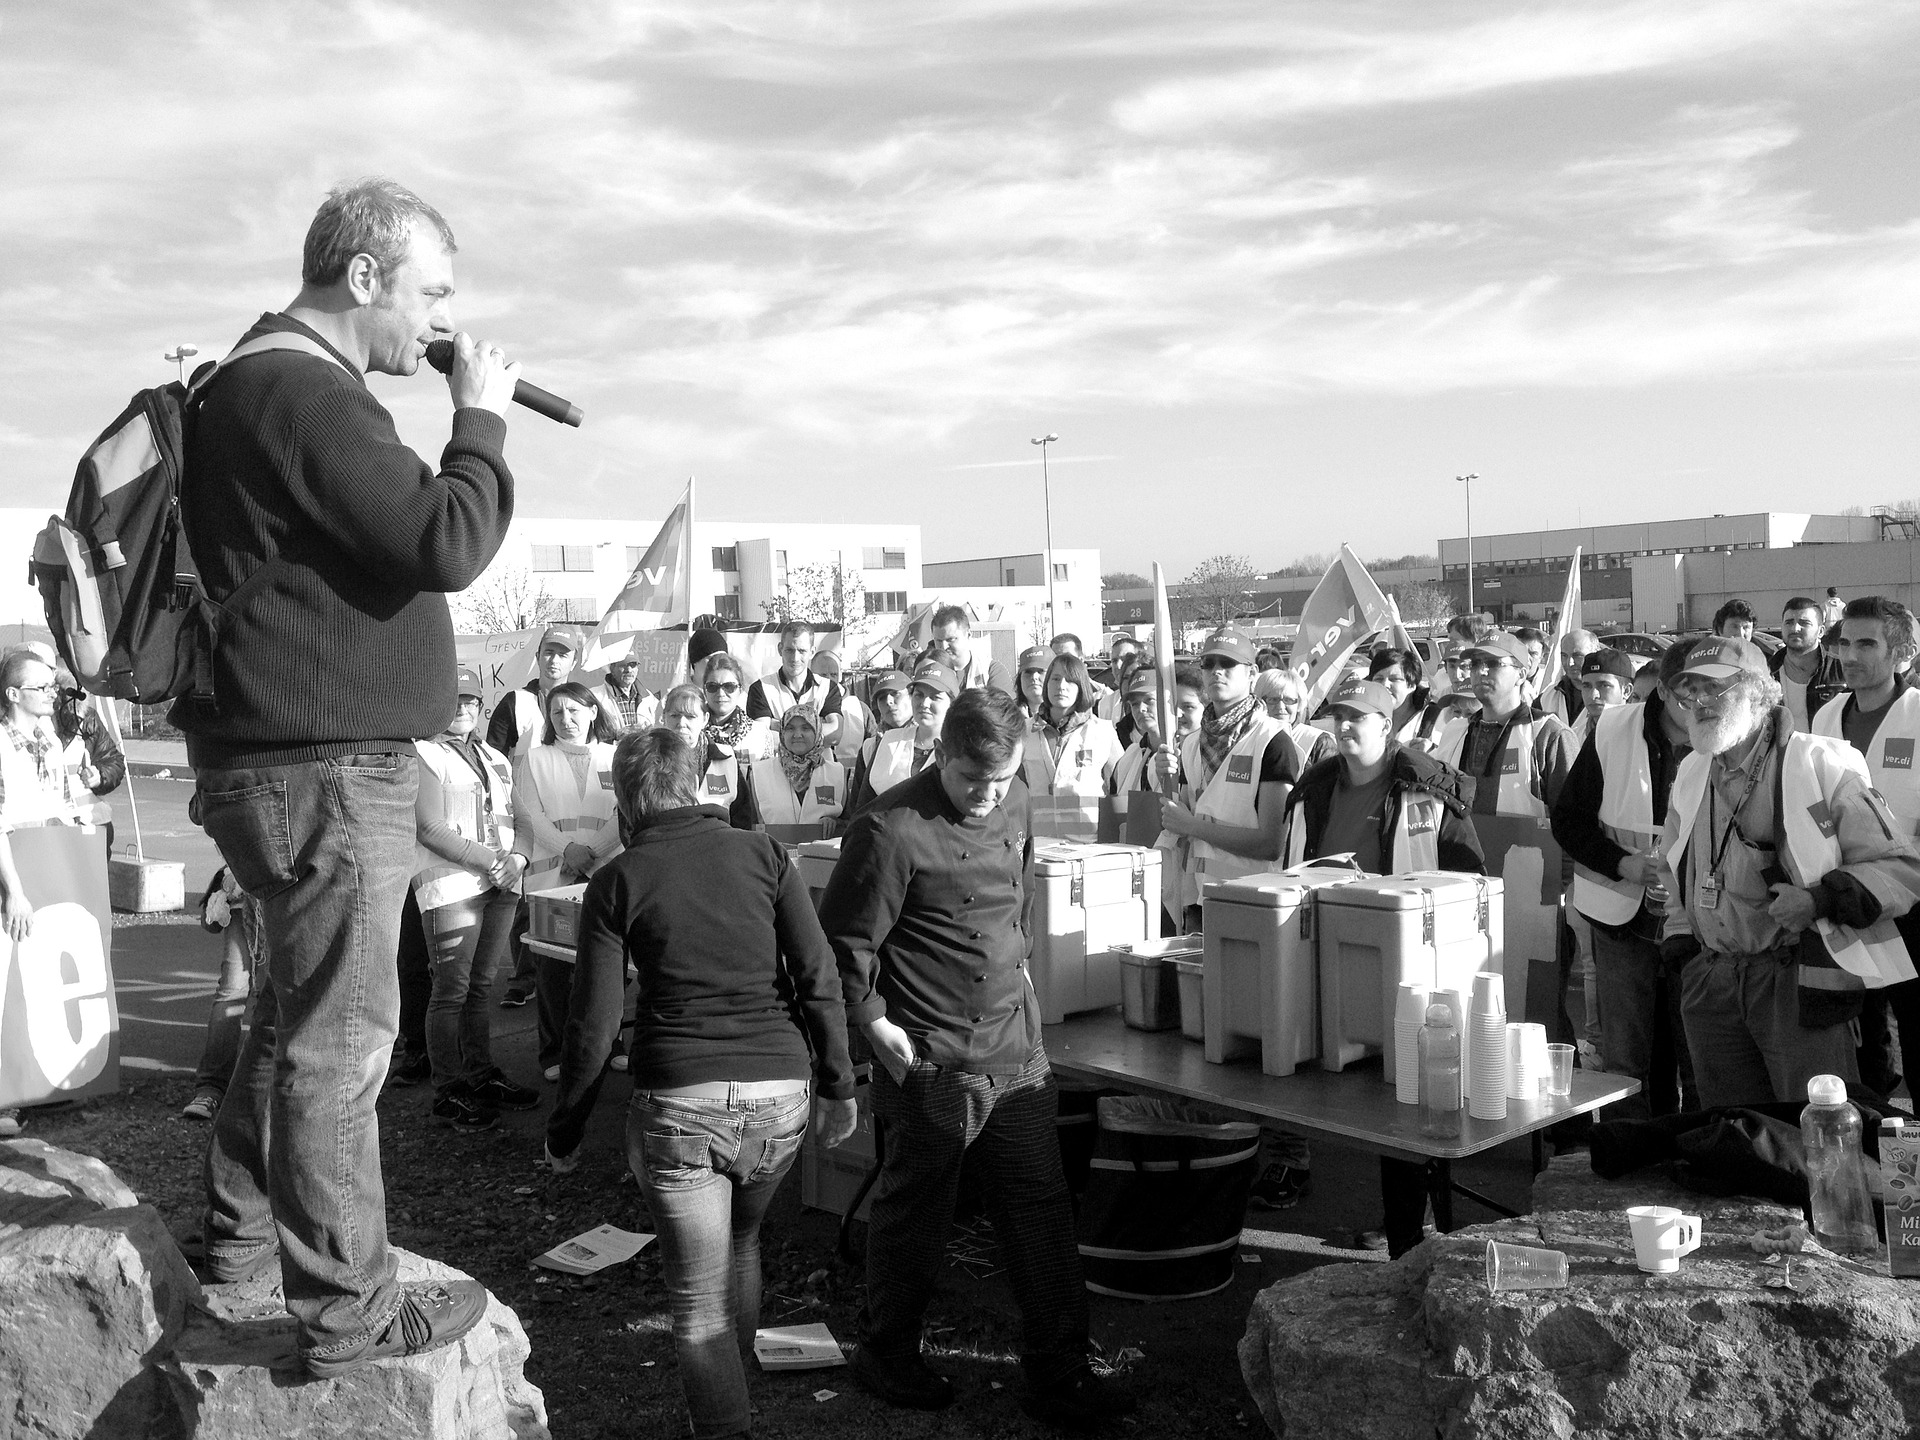 Man sieht ein schwarz-weiß Bild von einem Mann mit Mikrofon, der zu einem Protest-Publikum spricht.